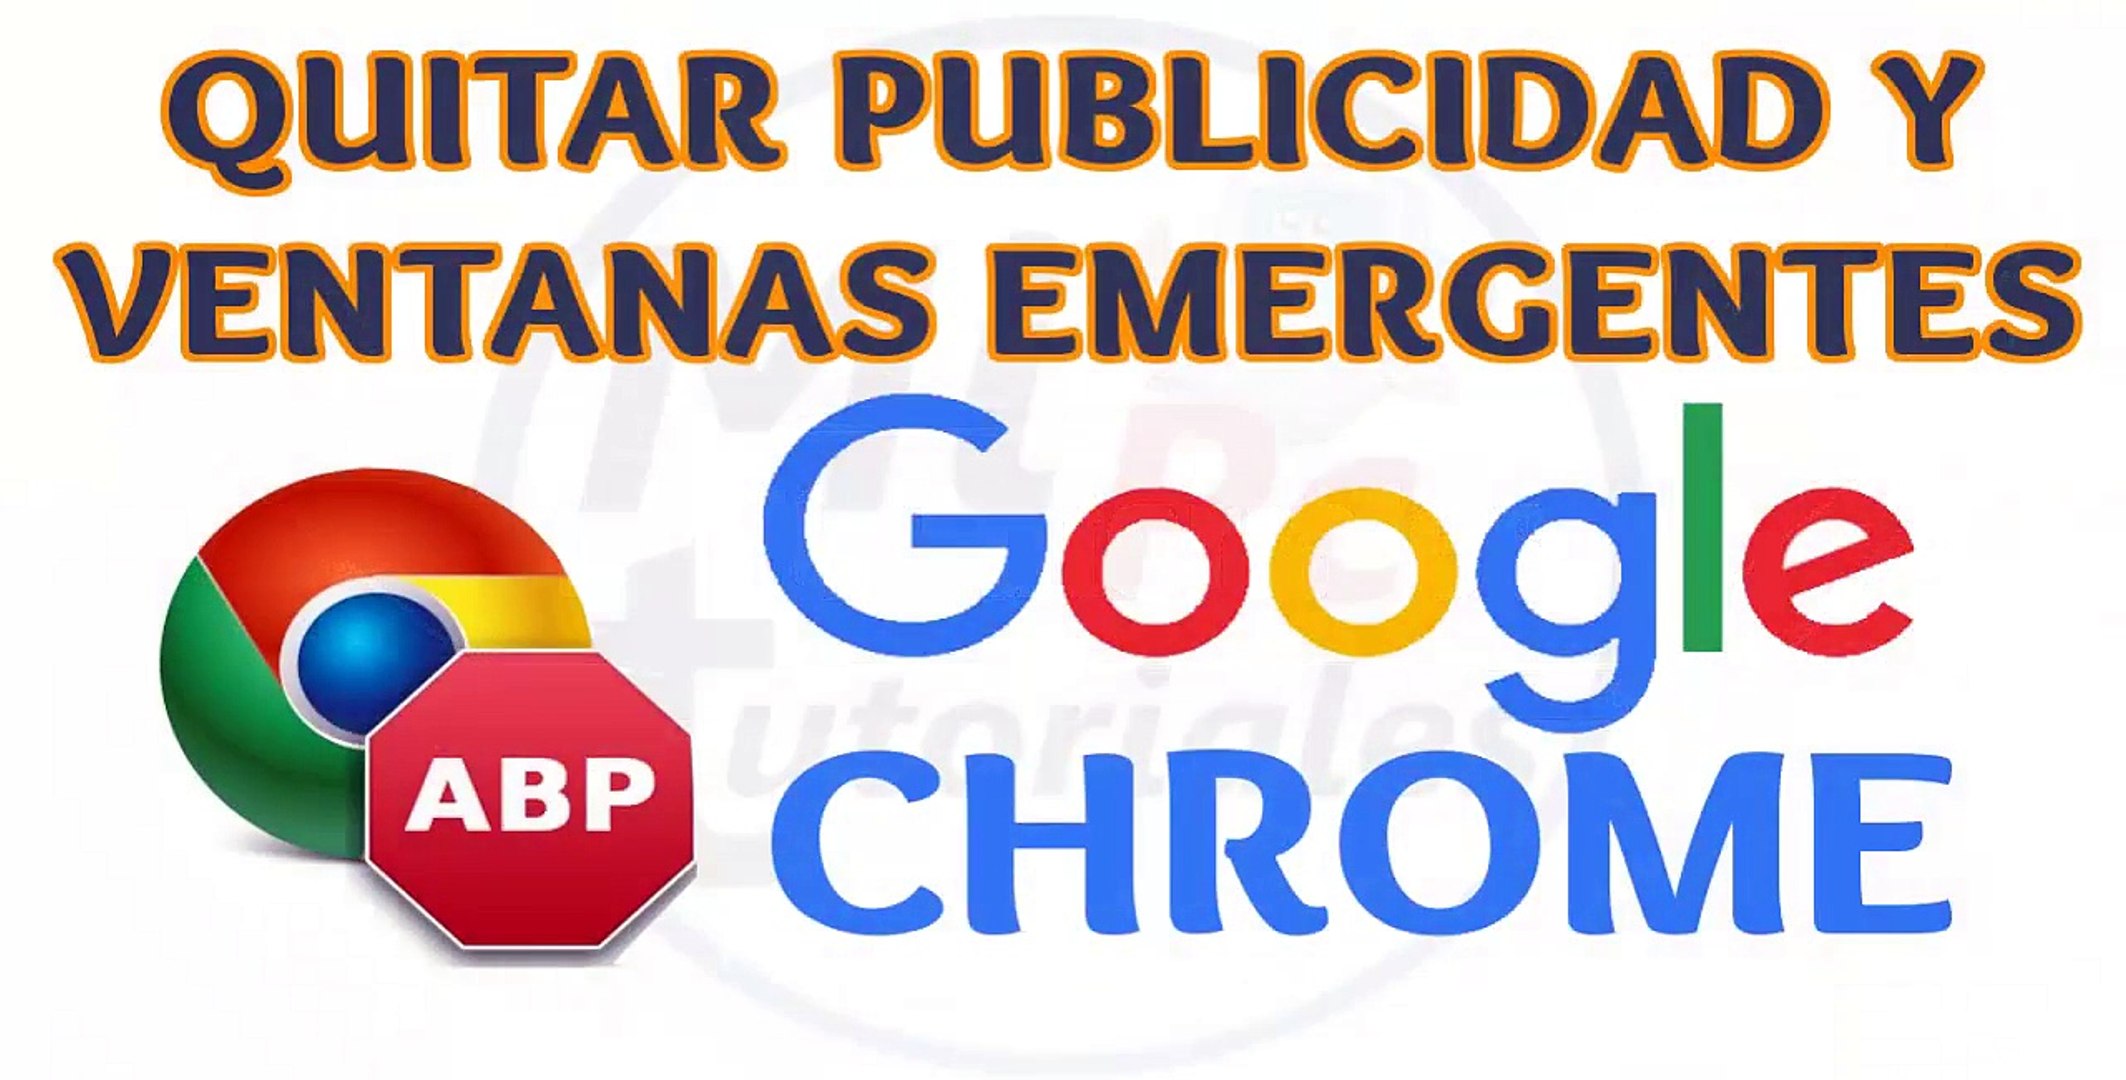 Como quitar la publicidad y ventanas emergentes pop-ups en Google Chrome |  100% garantizado - video Dailymotion